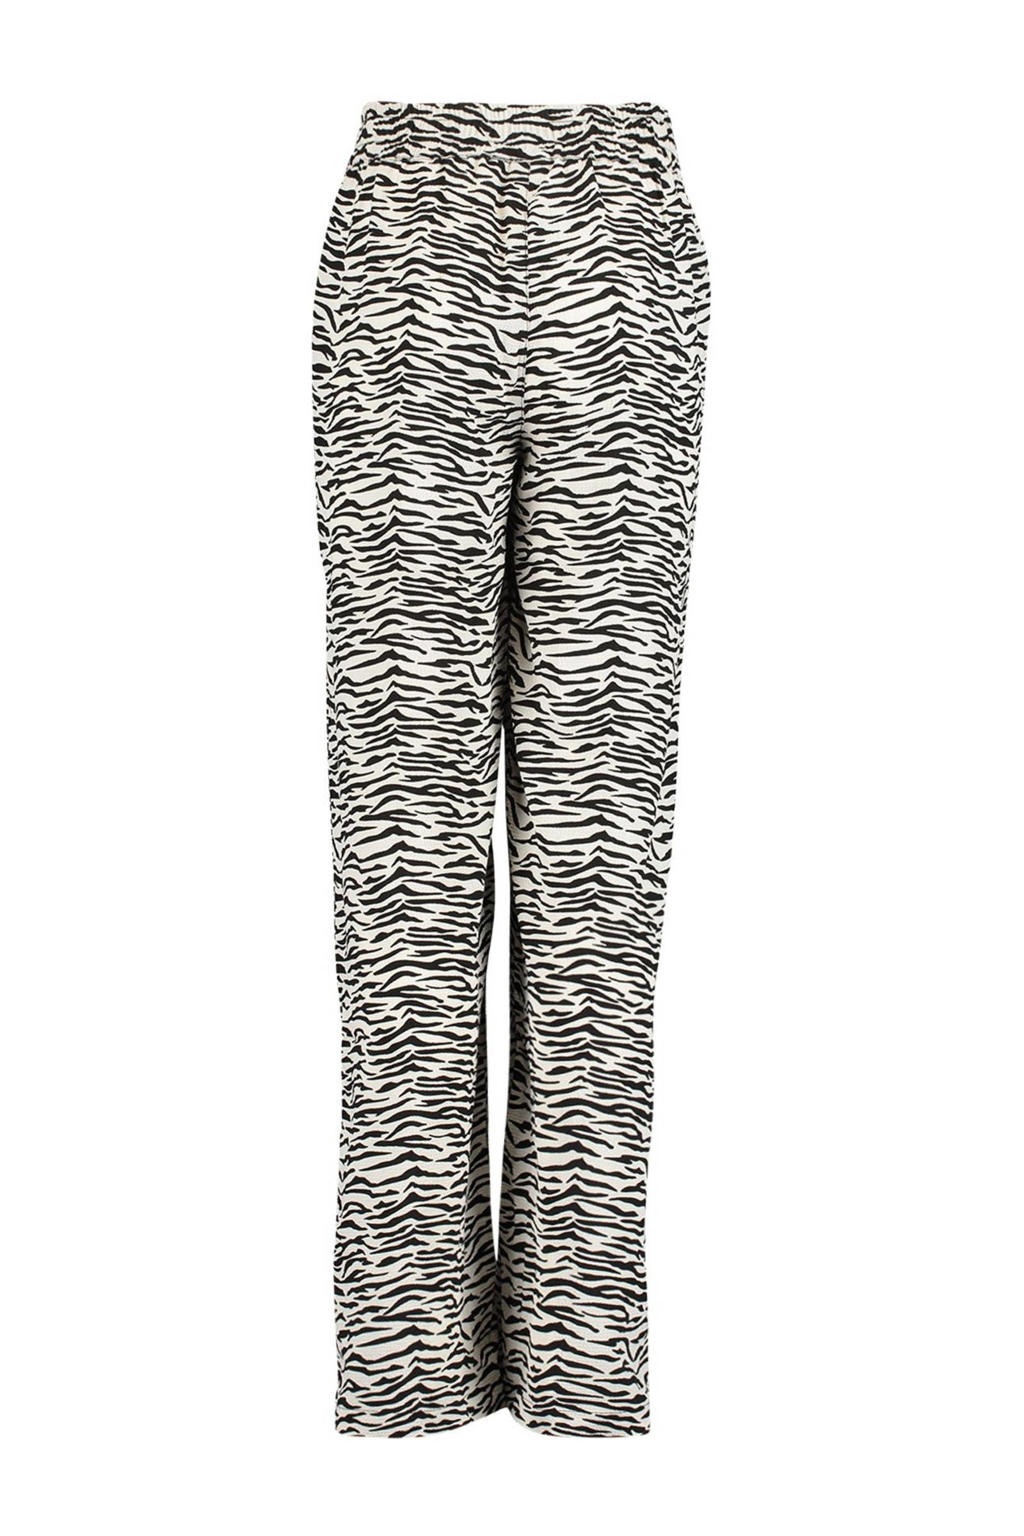 Zwart en witte meisjes CoolCat Junior wide leg broek Phine CG van polyester met regular waist, elastische tailleband en zebraprint